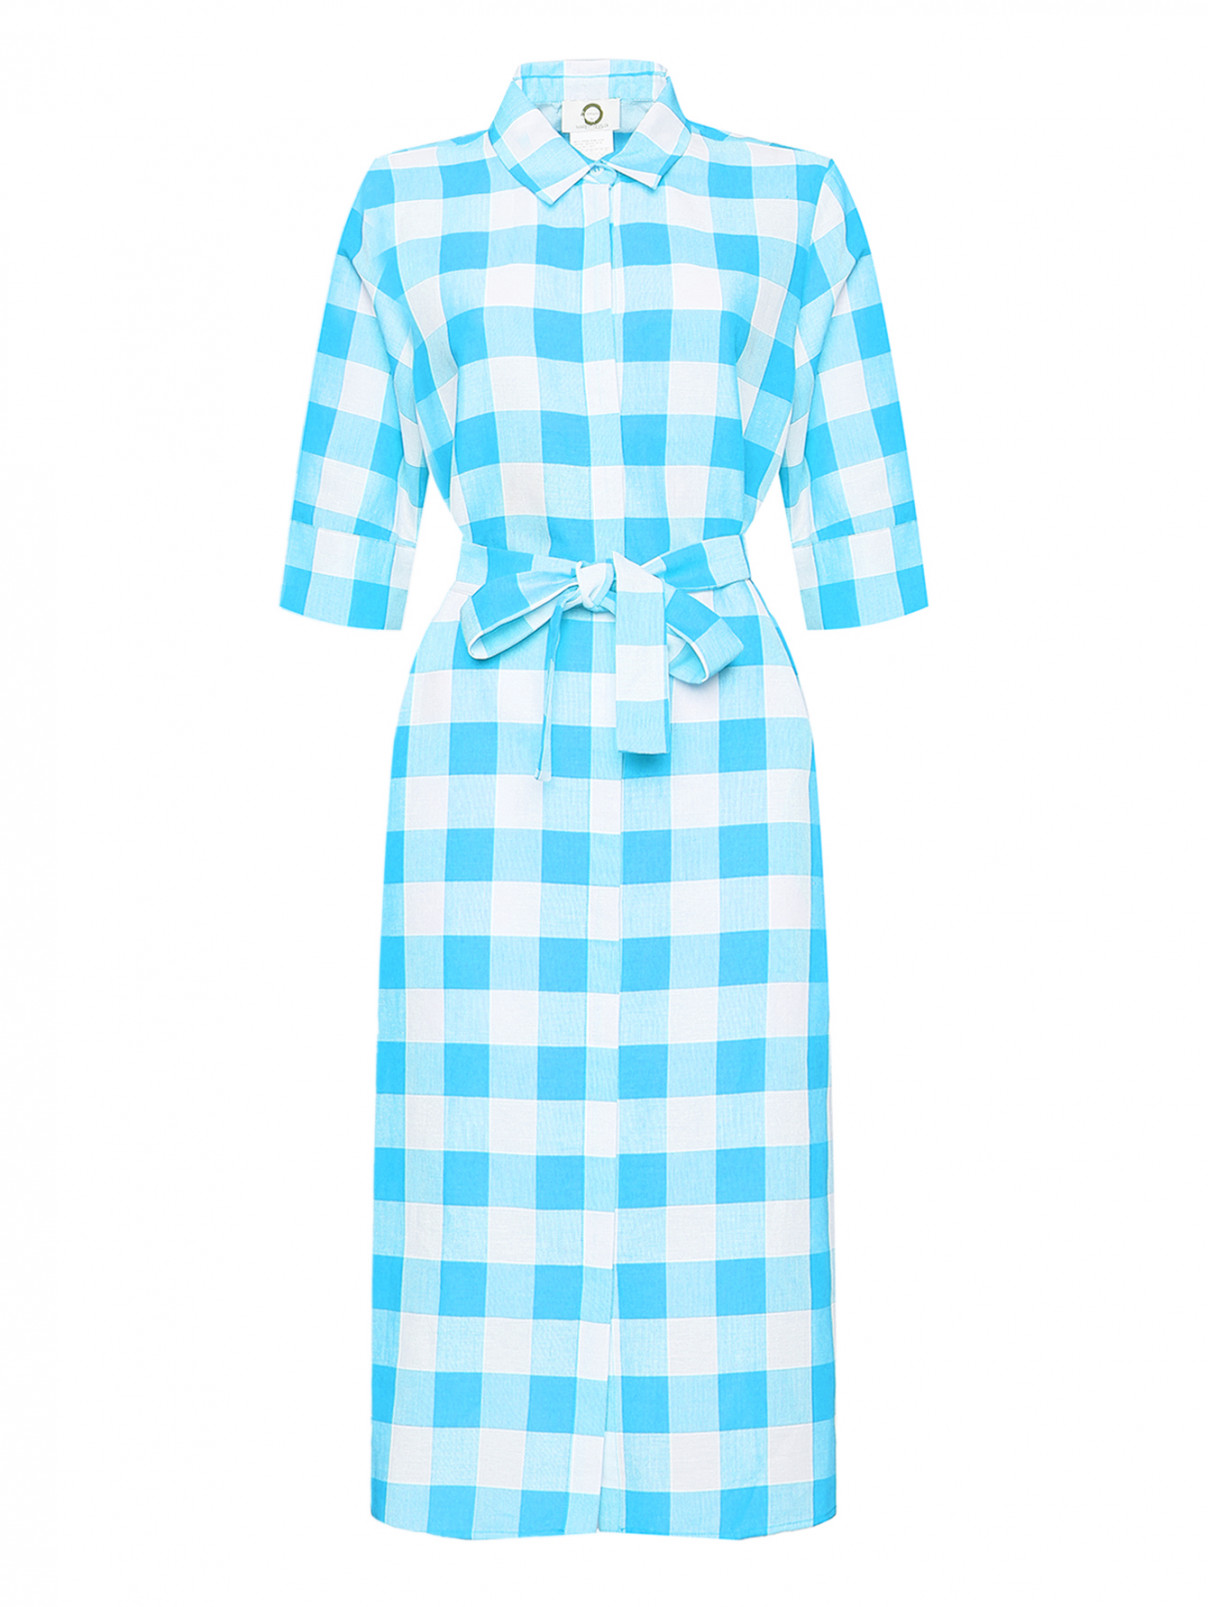 Платье из хлопка и льна с узором клетка Marina Rinaldi  –  Общий вид  – Цвет:  Синий